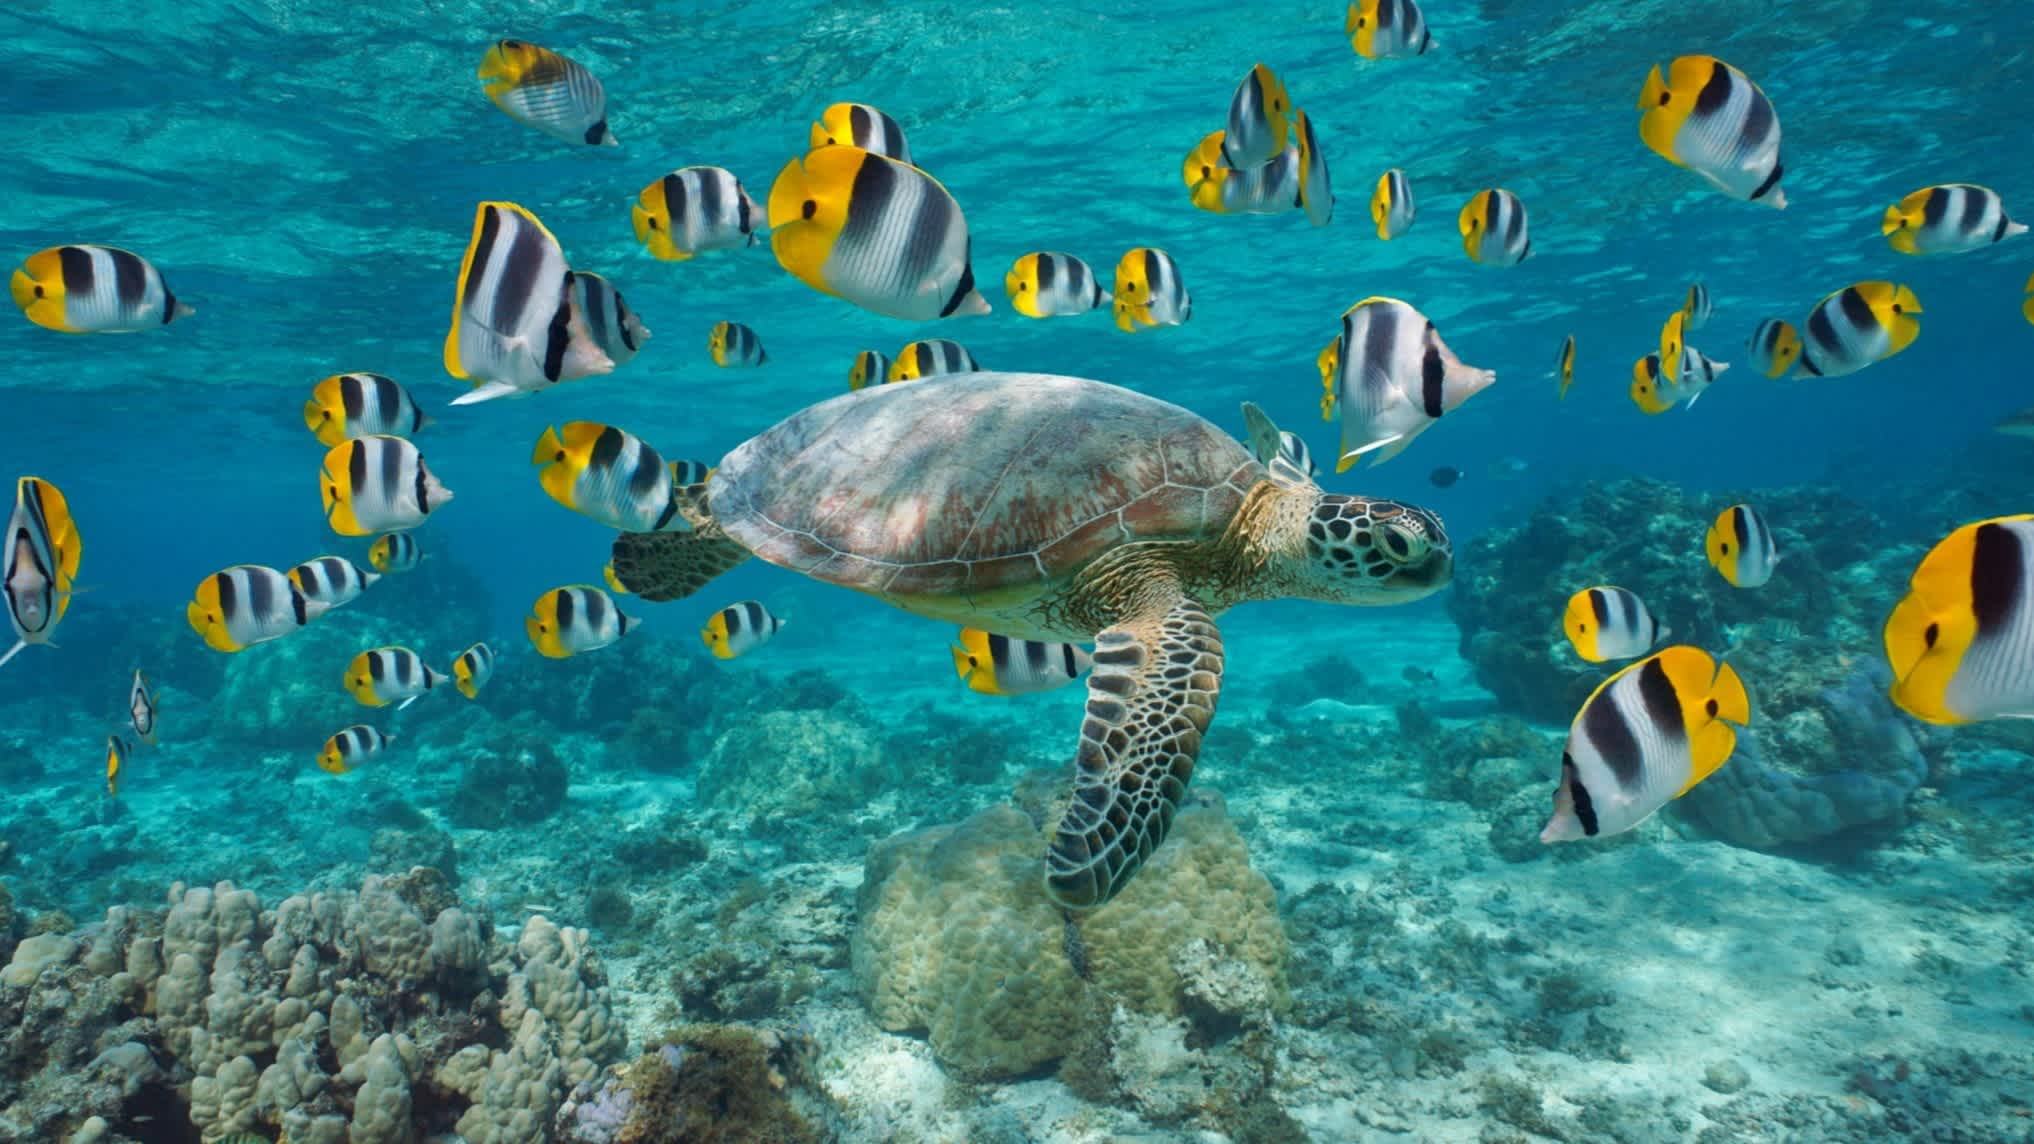 Meeresschildkröte und bunte Fischschwarm unter Wasser.